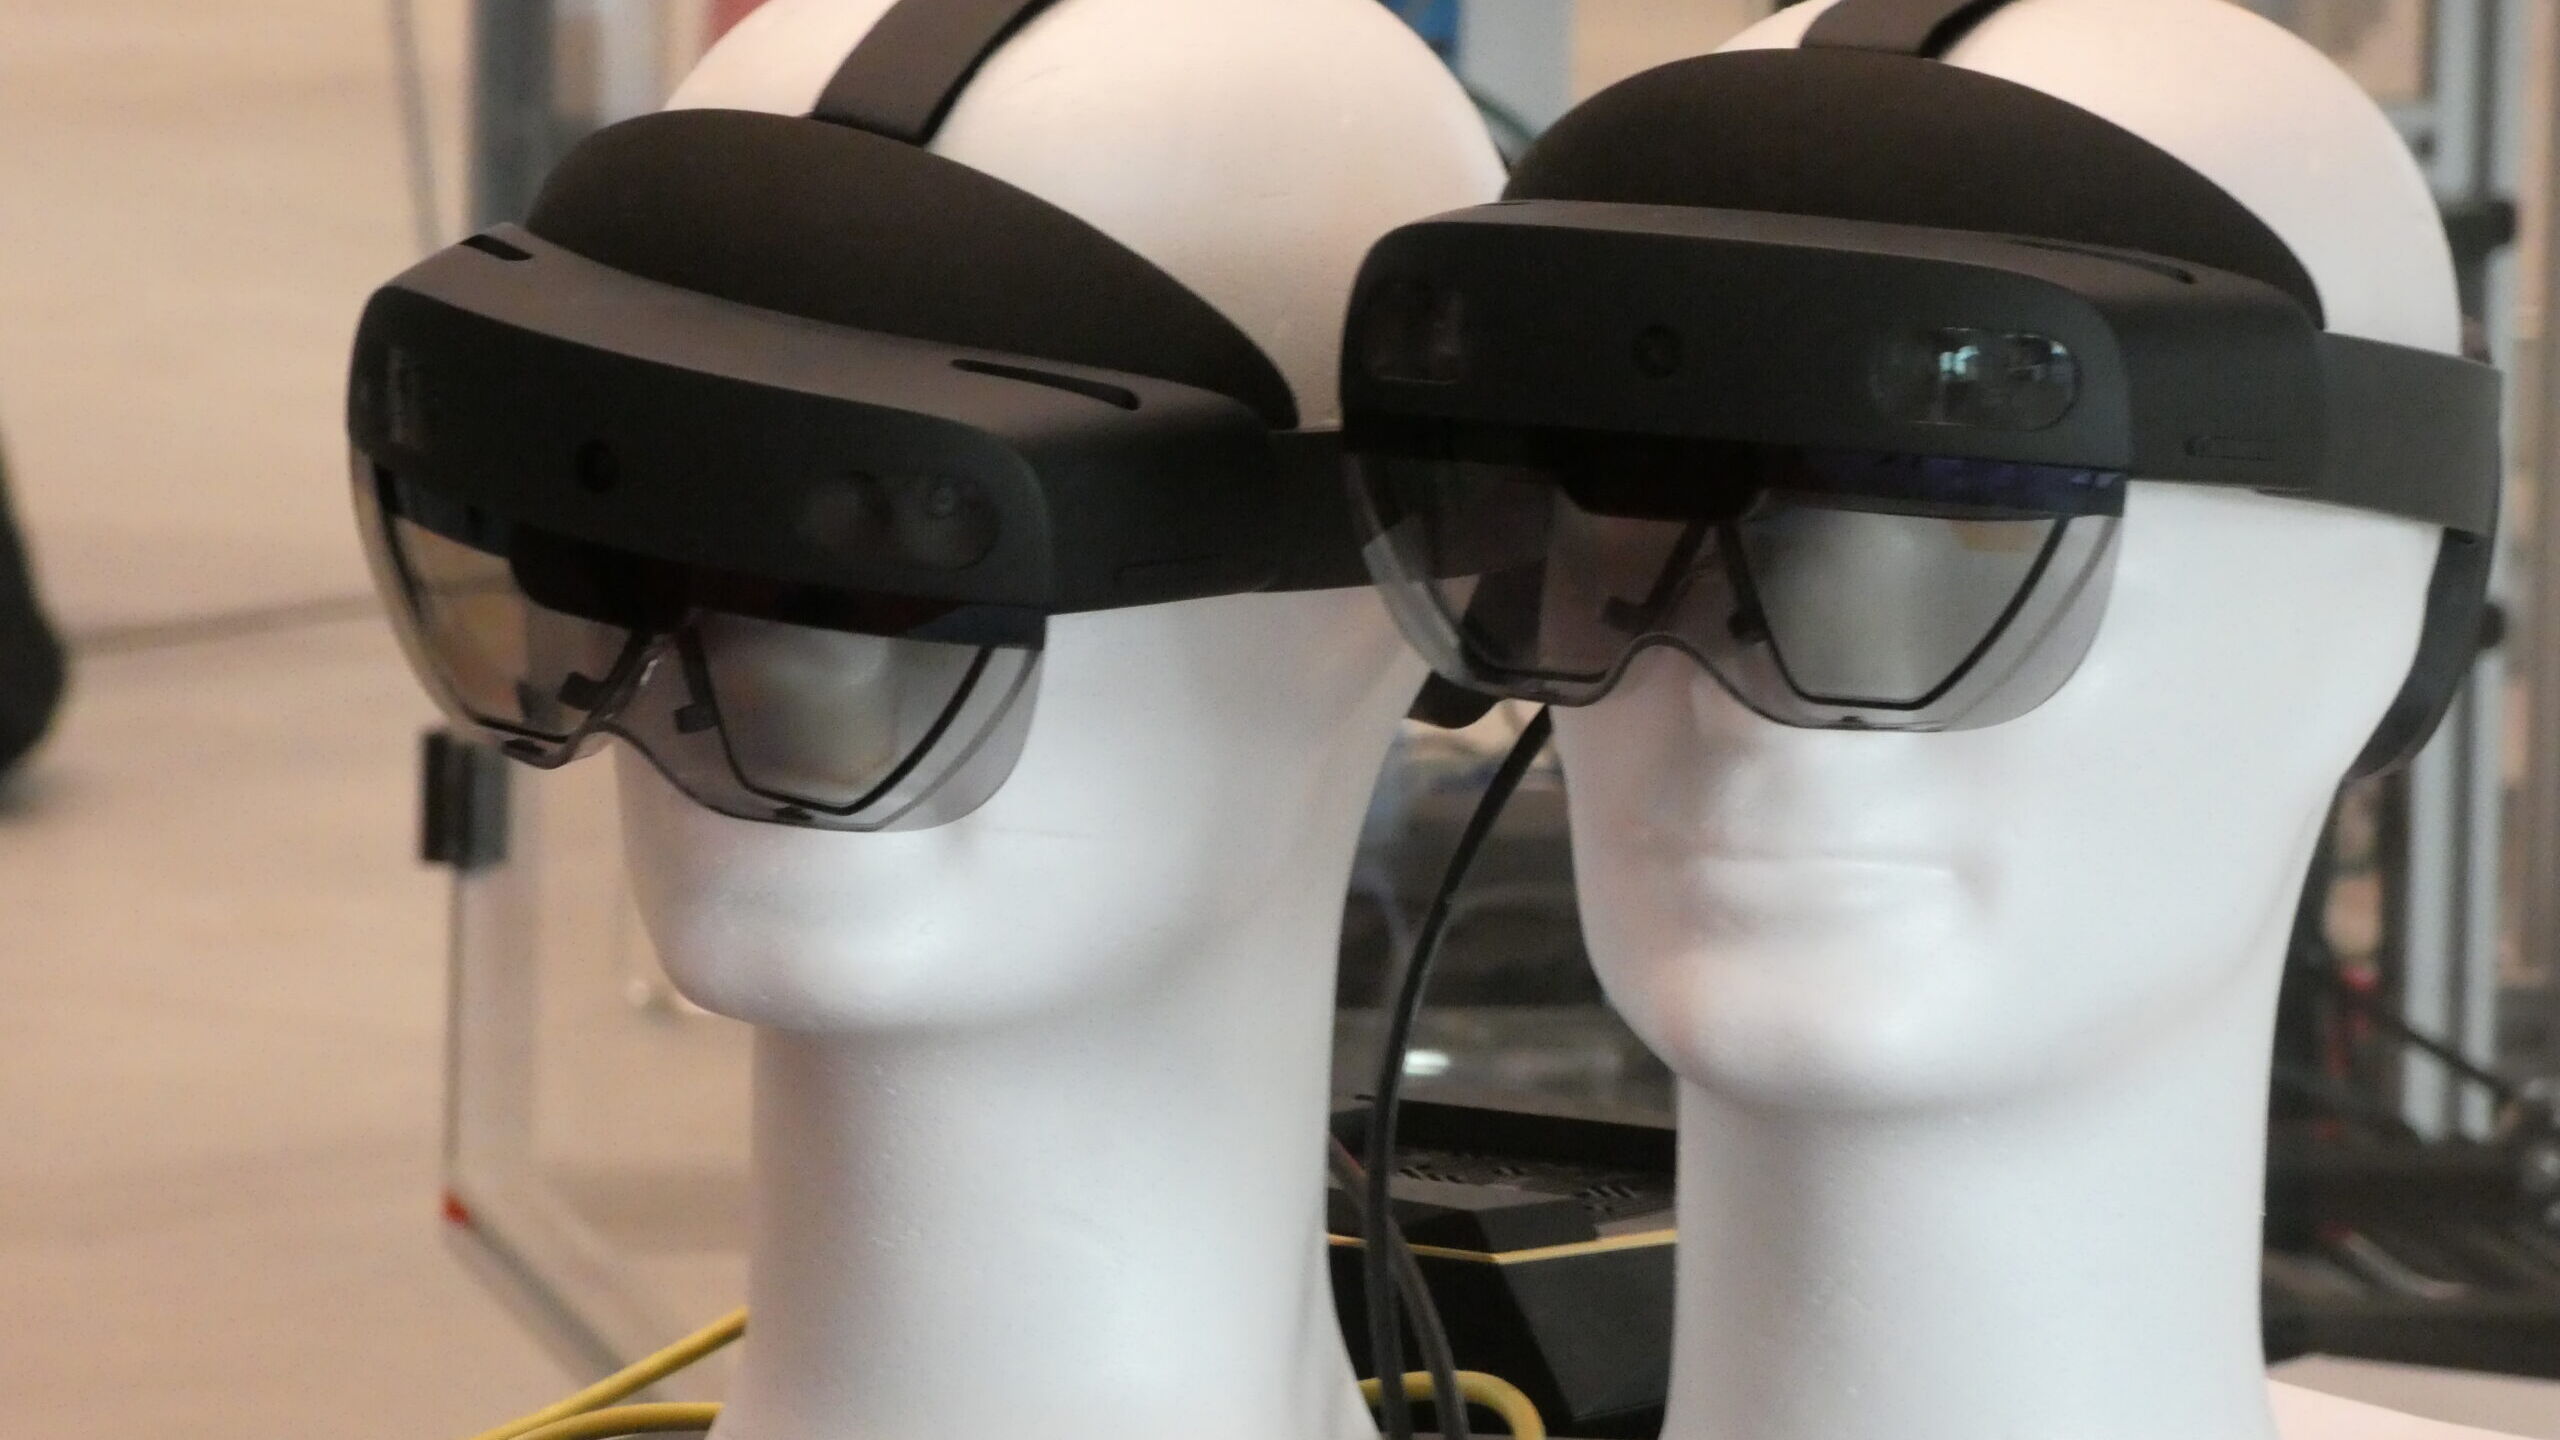 Glasögon för användning av augmented reality på Innovation Park i Biel/Bienne